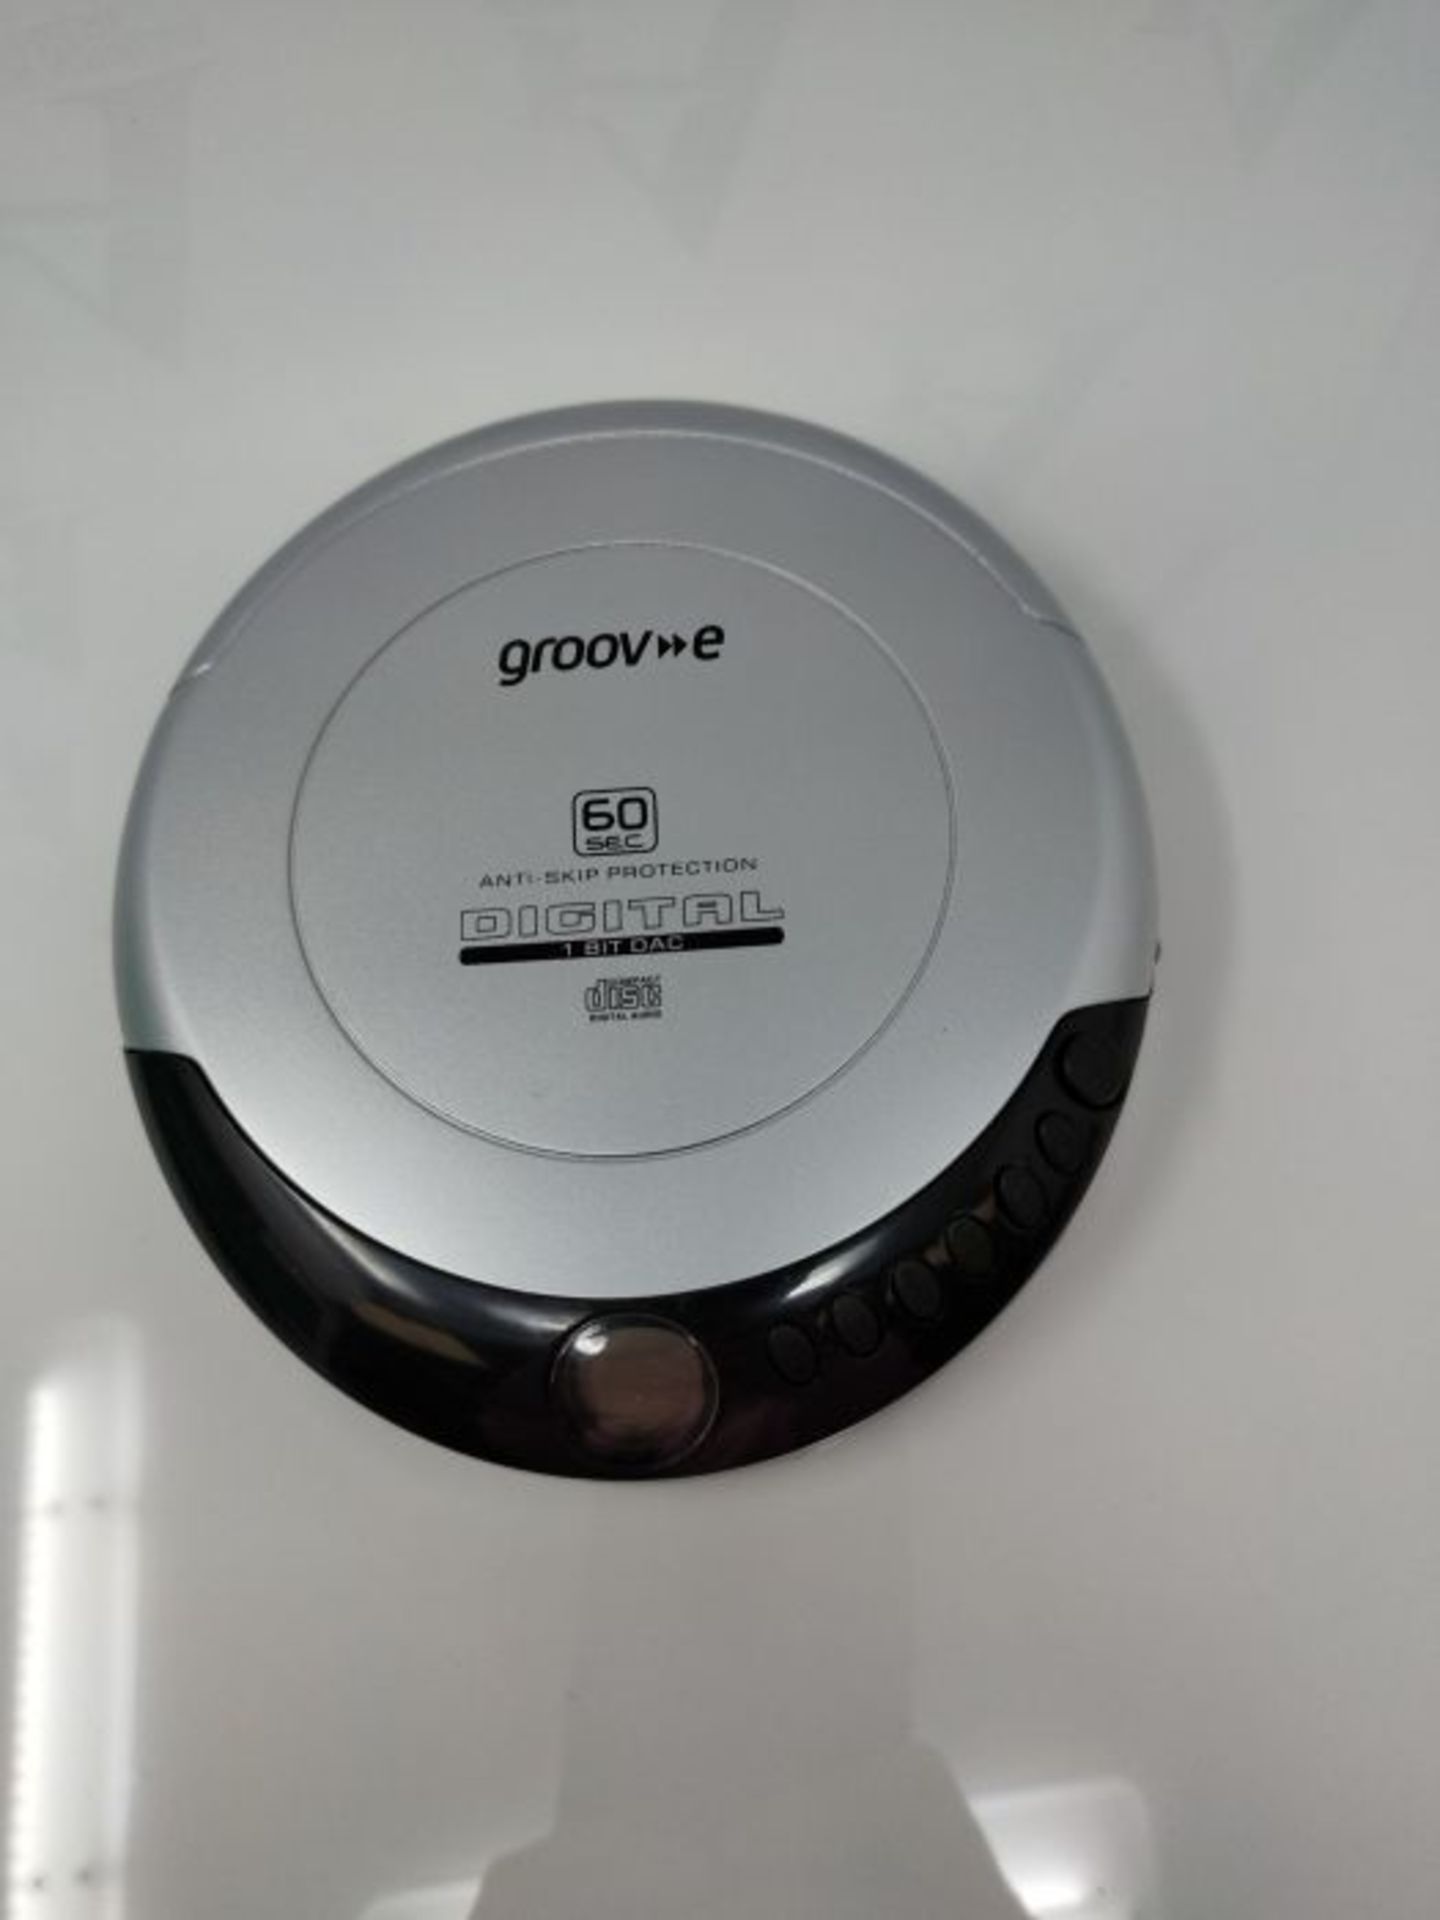 Groov-e GVPS110SR Retro Persönlicher CD-Player mit 20 Titeln programmierbarem Speiche - Image 4 of 4